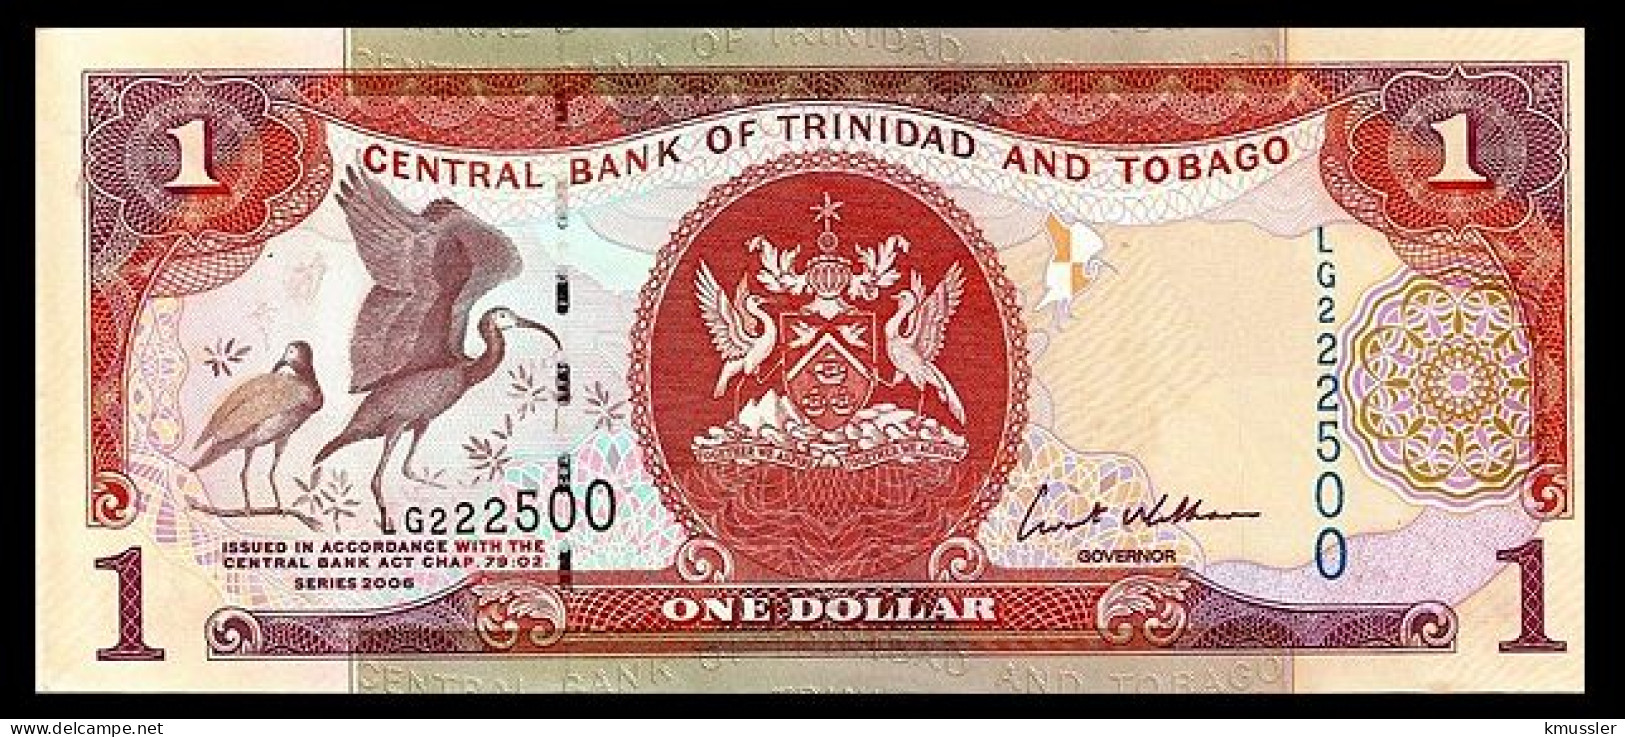 # # # Banknote Trinidad Und Tobago 1 Dollar 2002 UNC # # # - Trinidad En Tobago